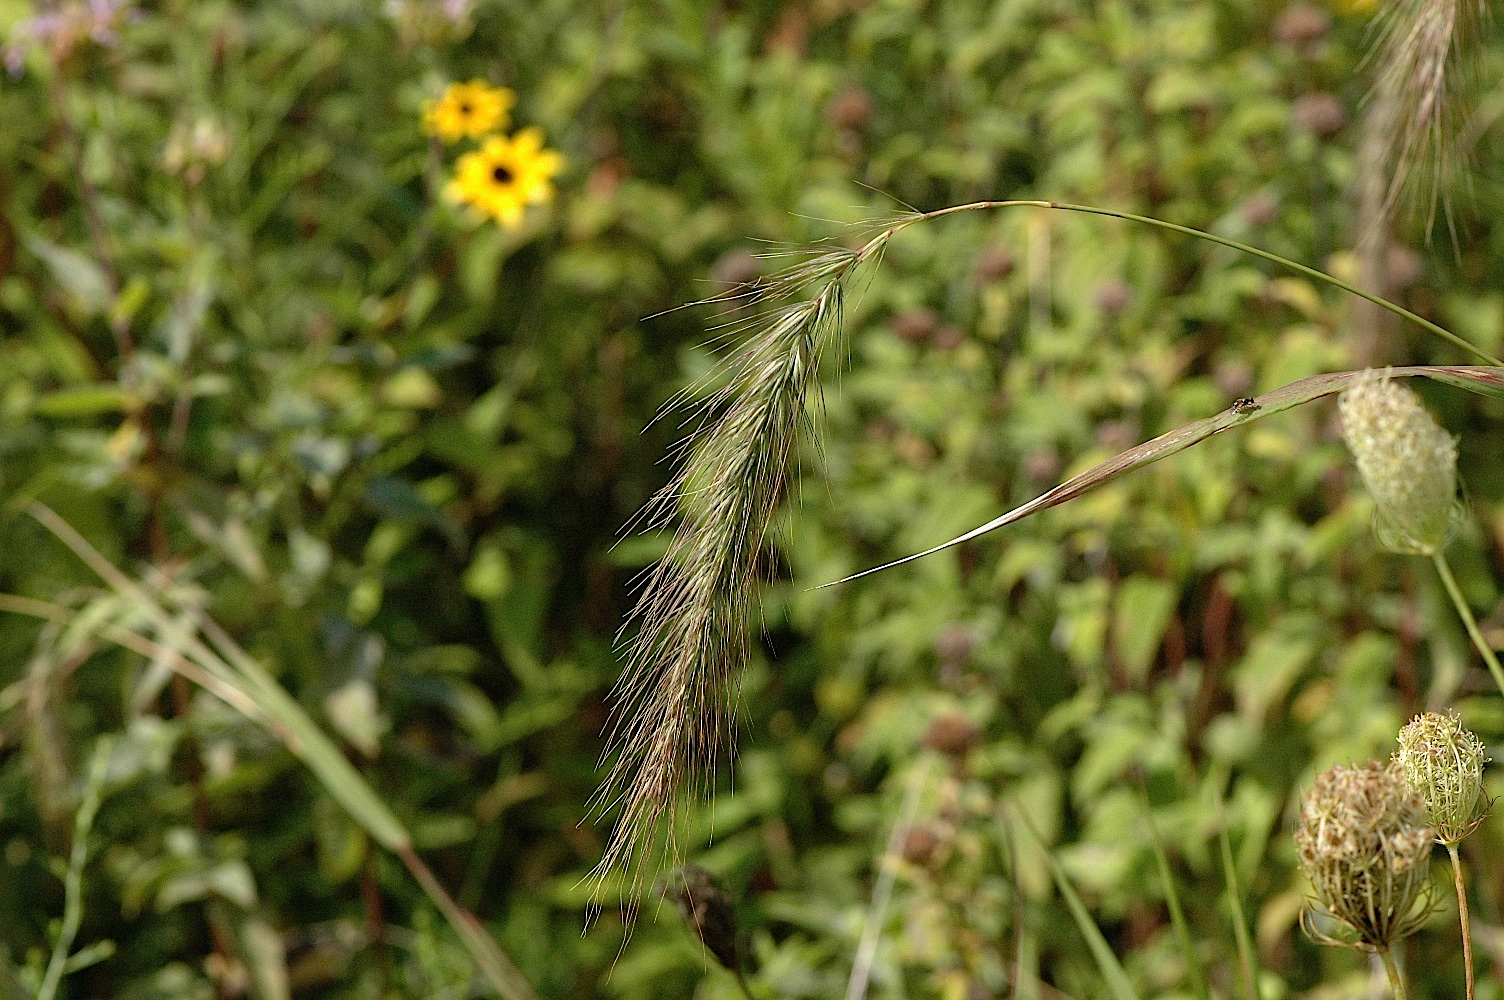 Field Biology in Southeastern Ohio: August 2011